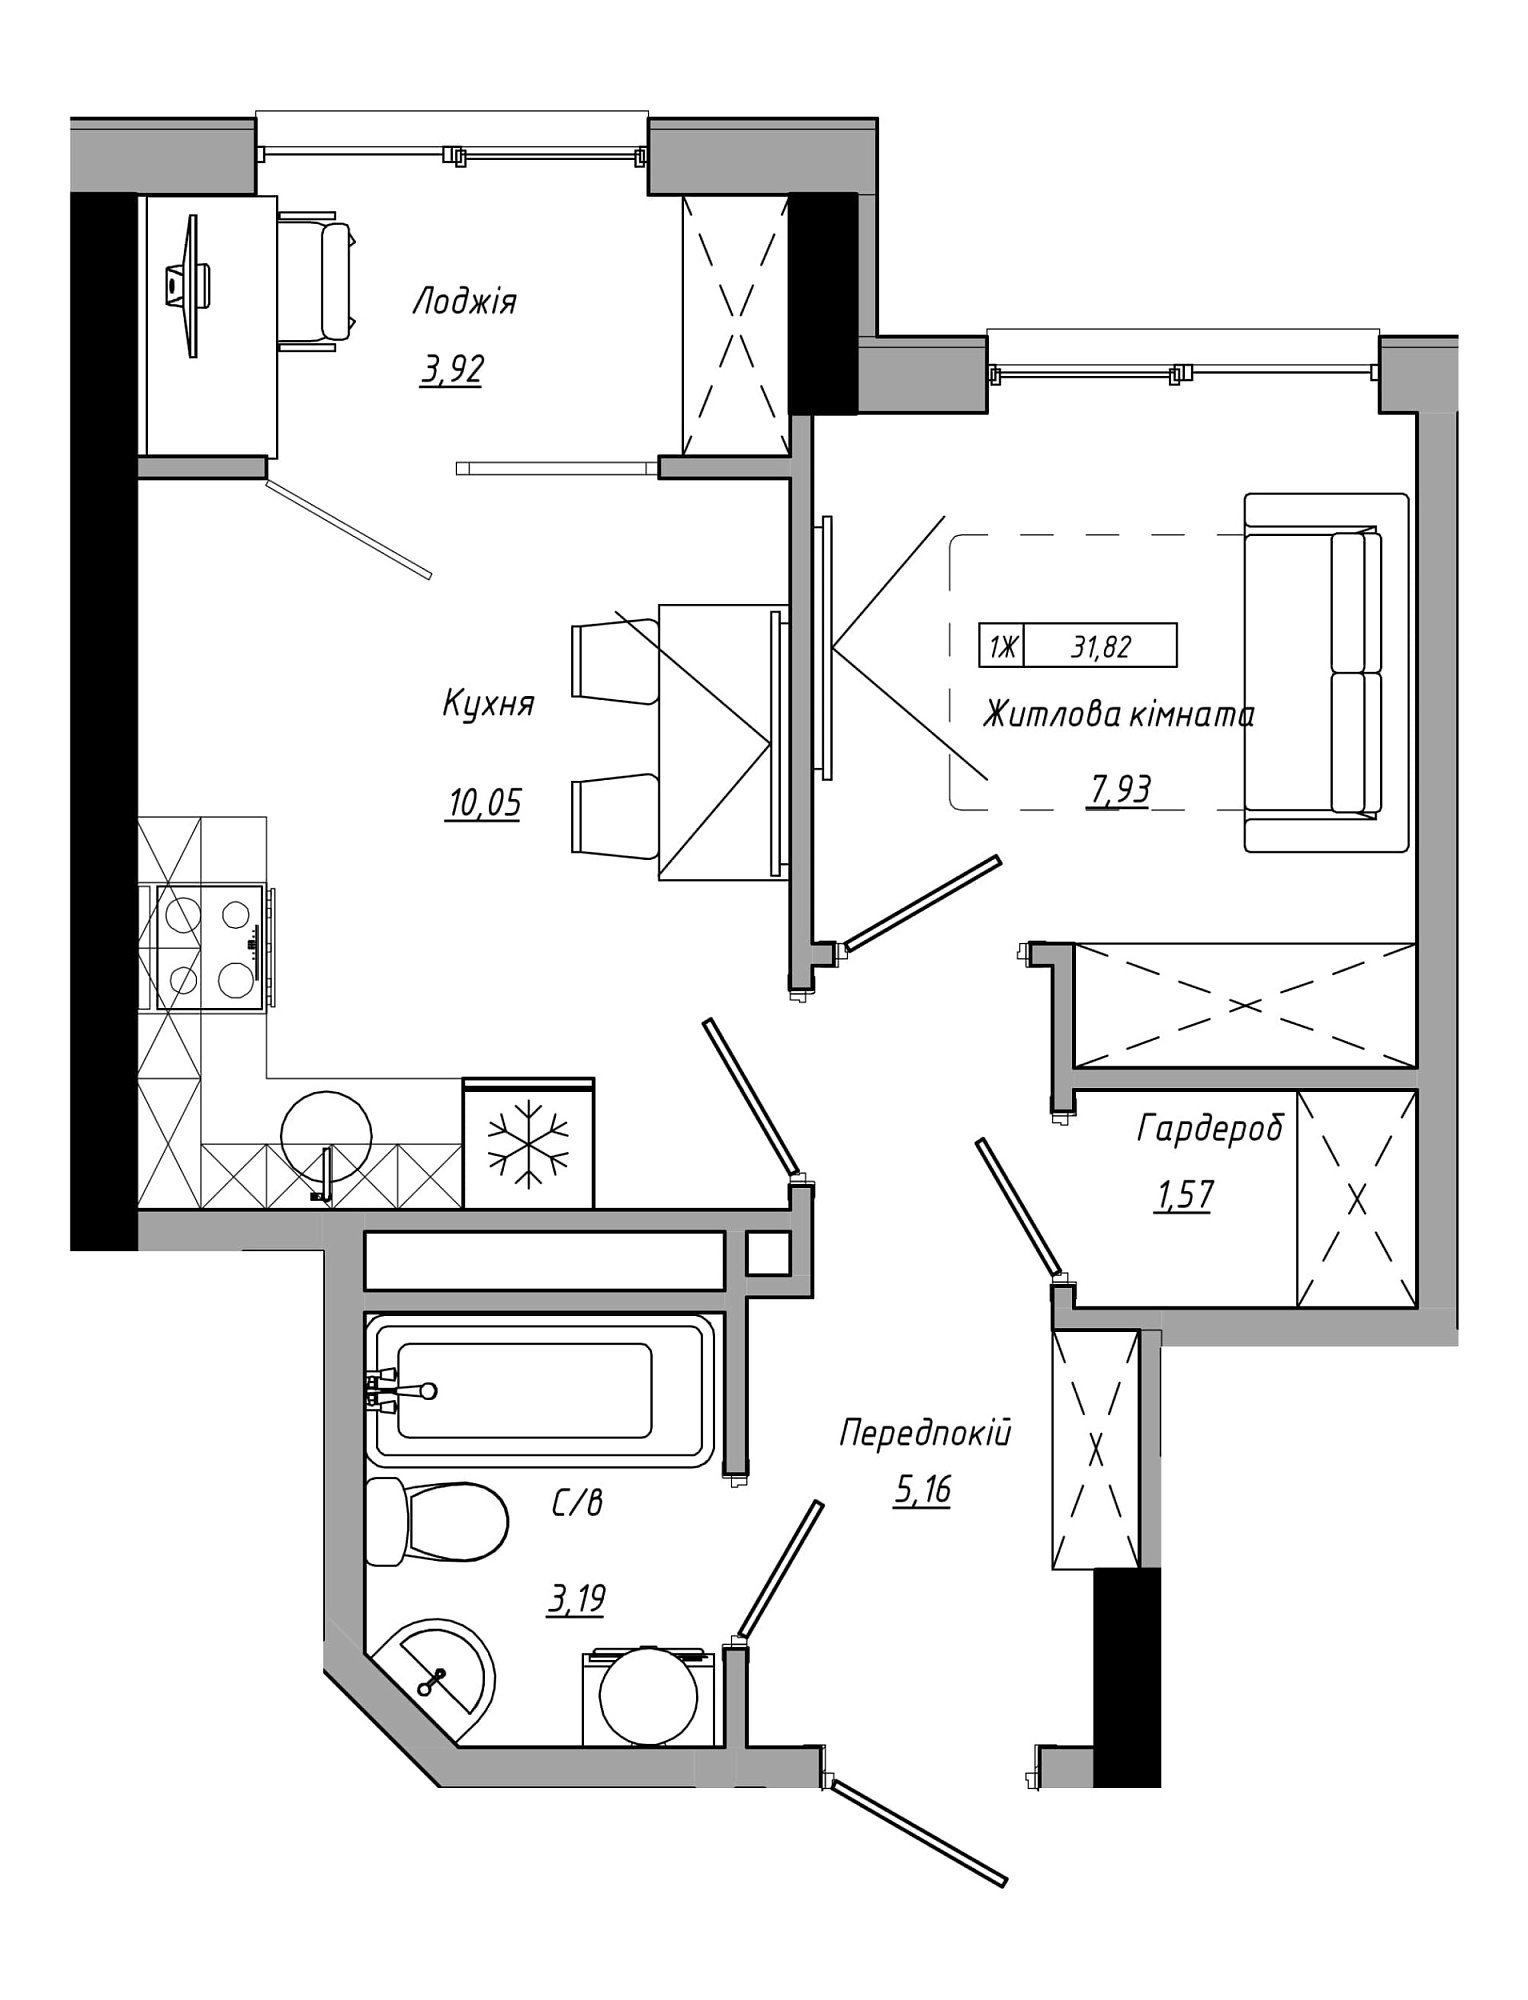 Планировка 1-к квартира площей 31.82м2, AB-21-09/00010.